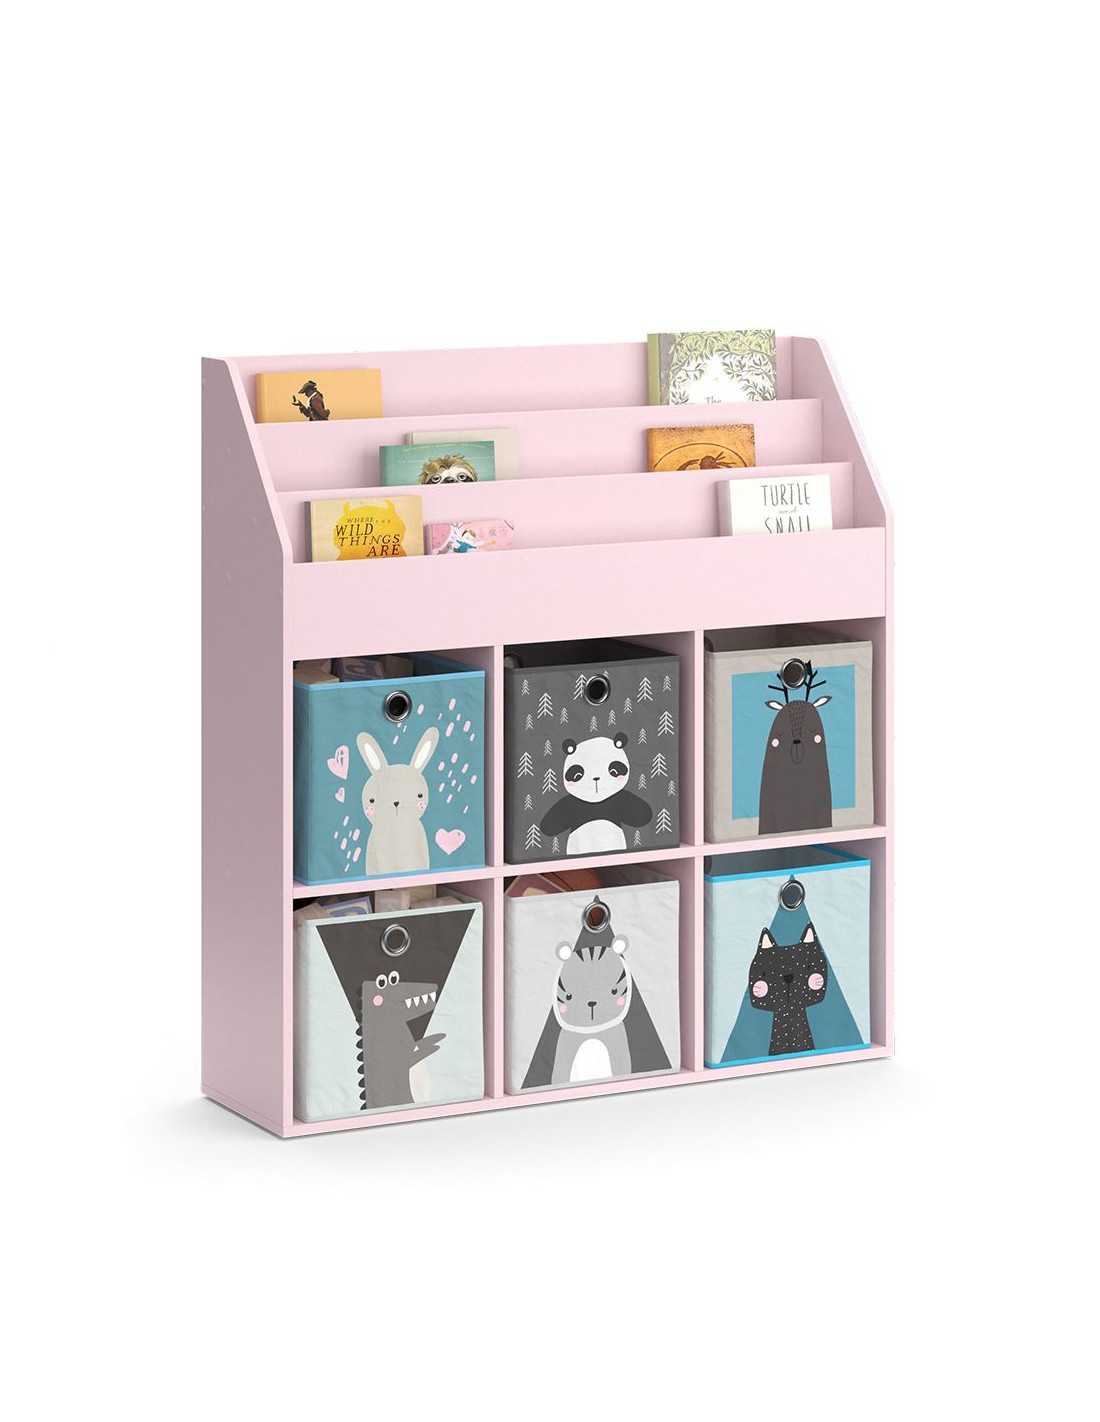 Etagère Montessori Rose avec banc 5 cases de rangement meuble enfant - Ciel  & terre